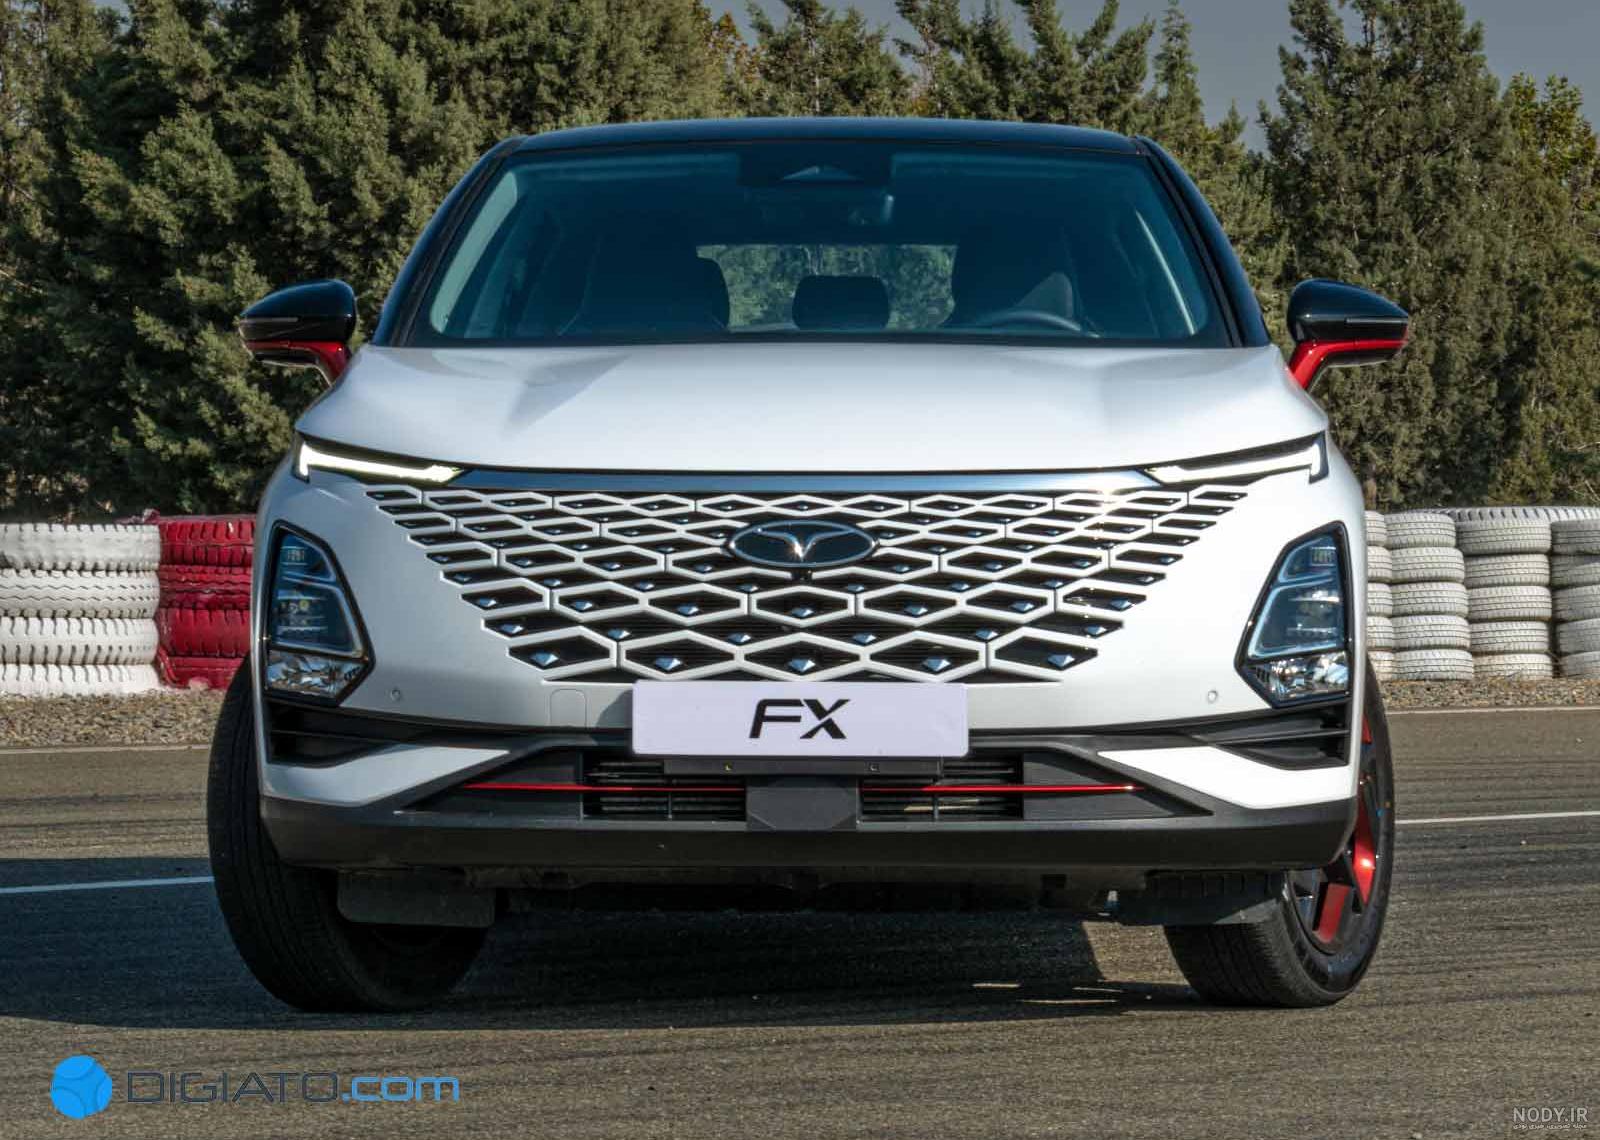 فونیکس FX رکورد پرشتاب ترین خودرو مونتاژی ایران را شکست - لپ تاپ استوک